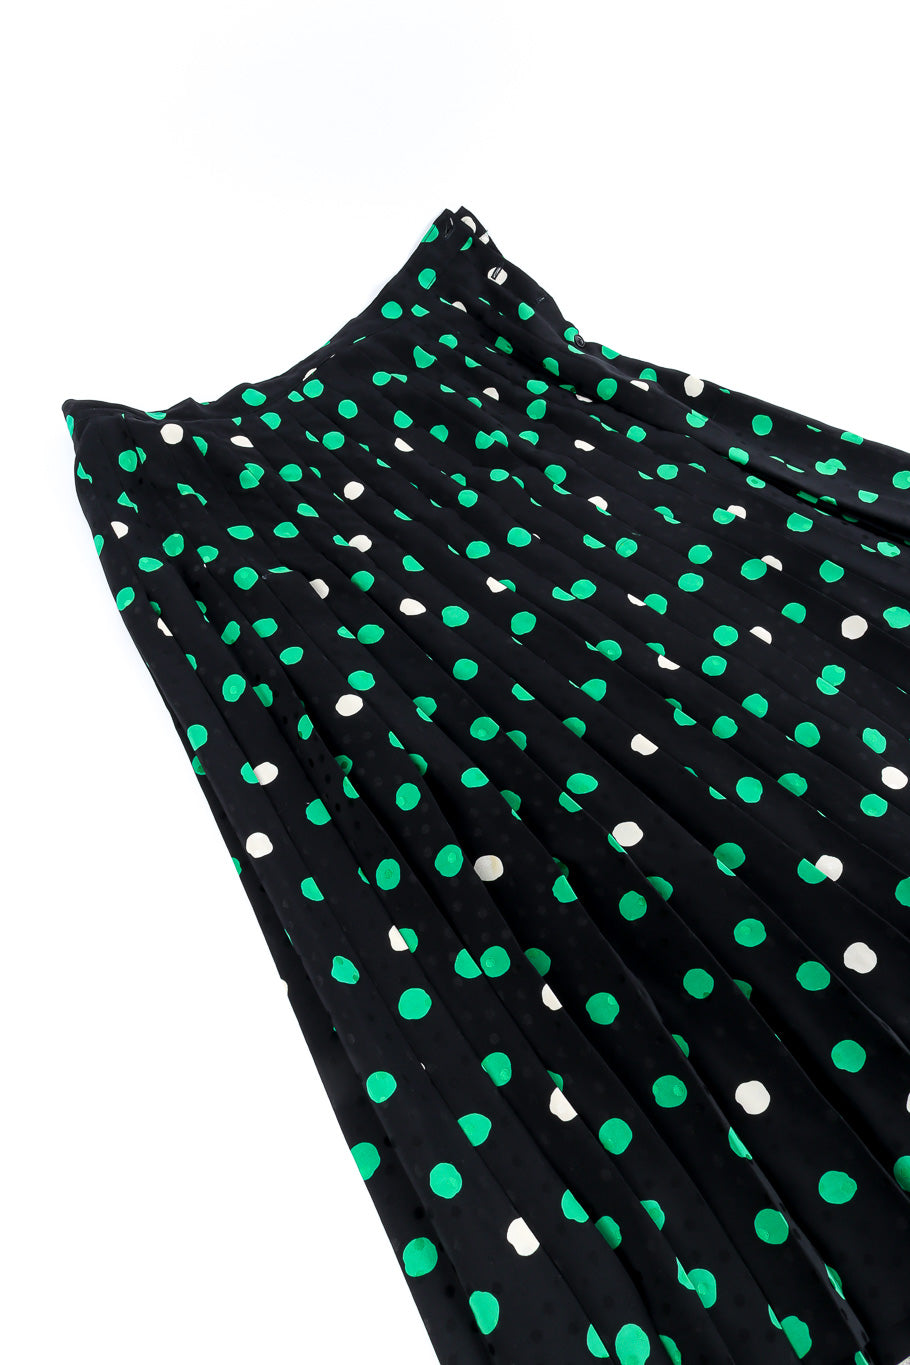 Adolfo polka dot silk blouse and skirt set skirt details @recessla